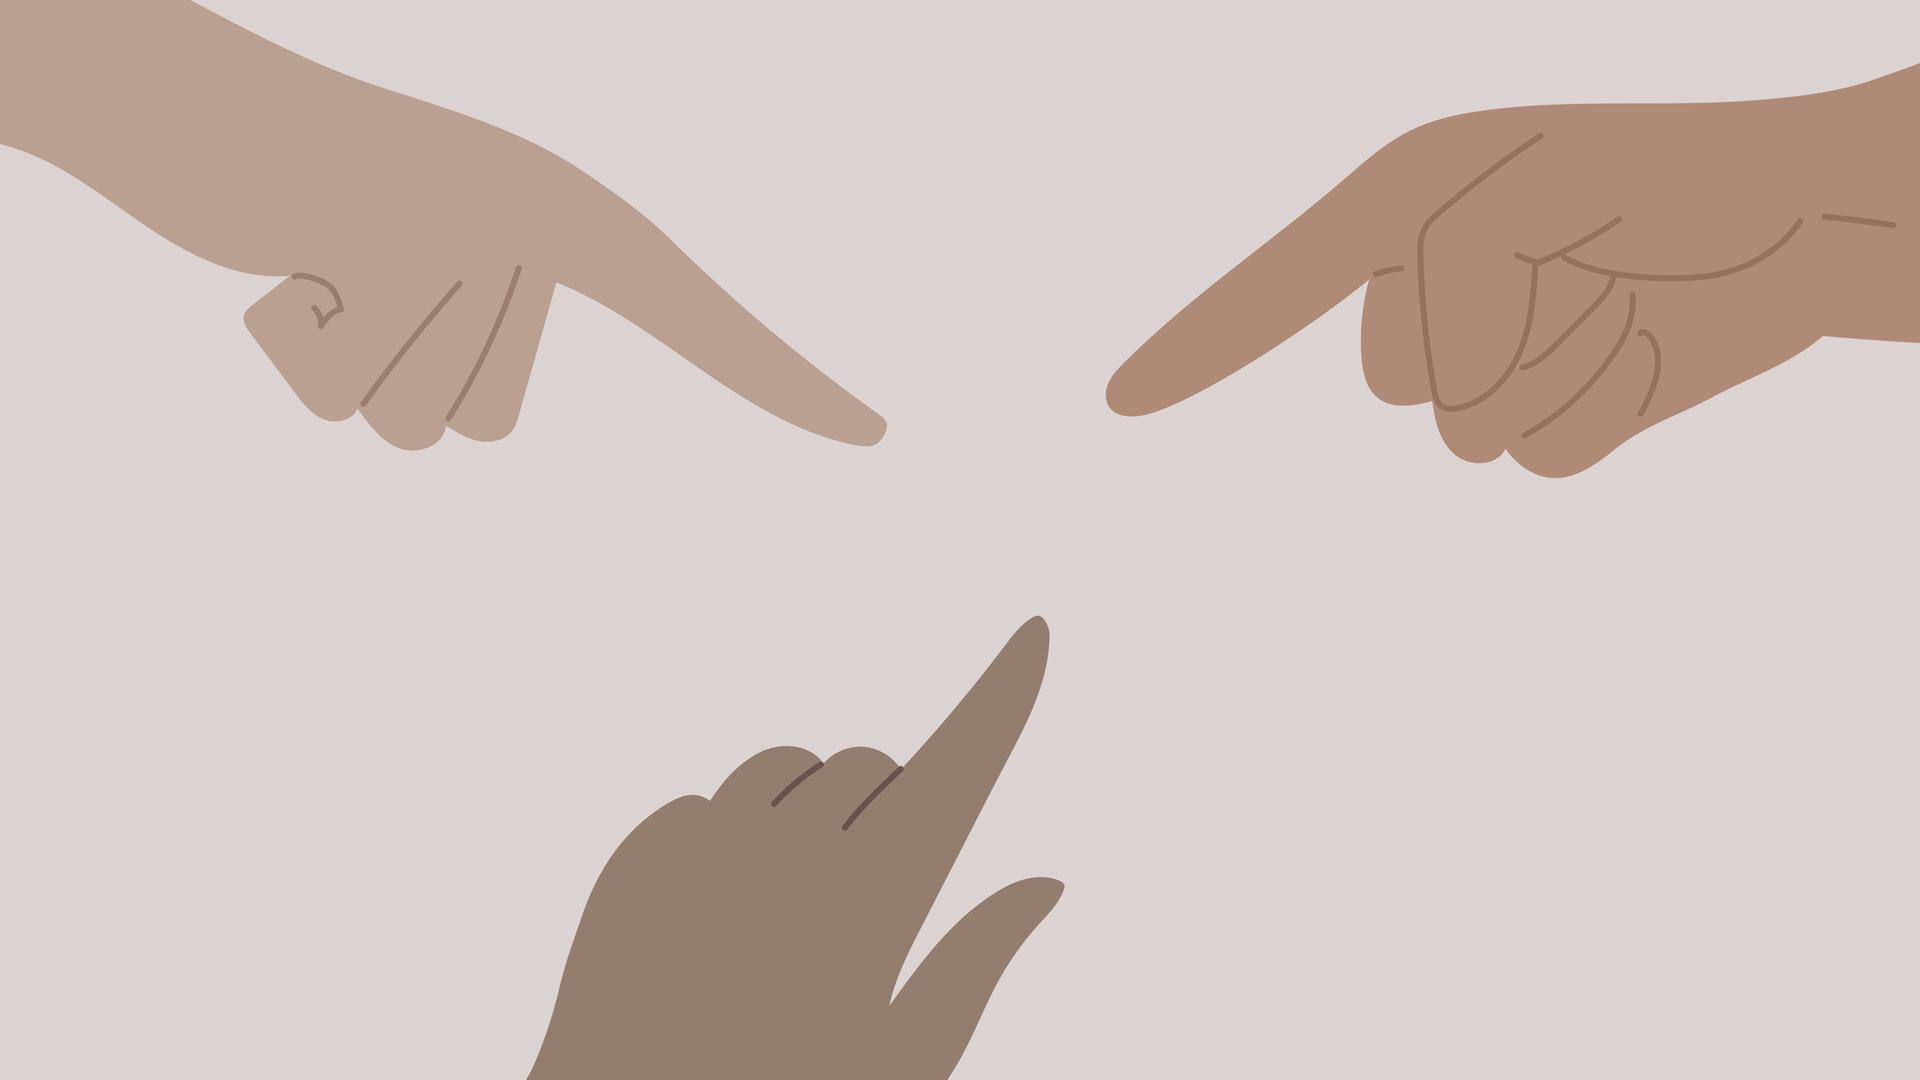 Drei Hände zeigen mit dem Zeigefinger auf etwas unsichtbares in ihrer Mitte